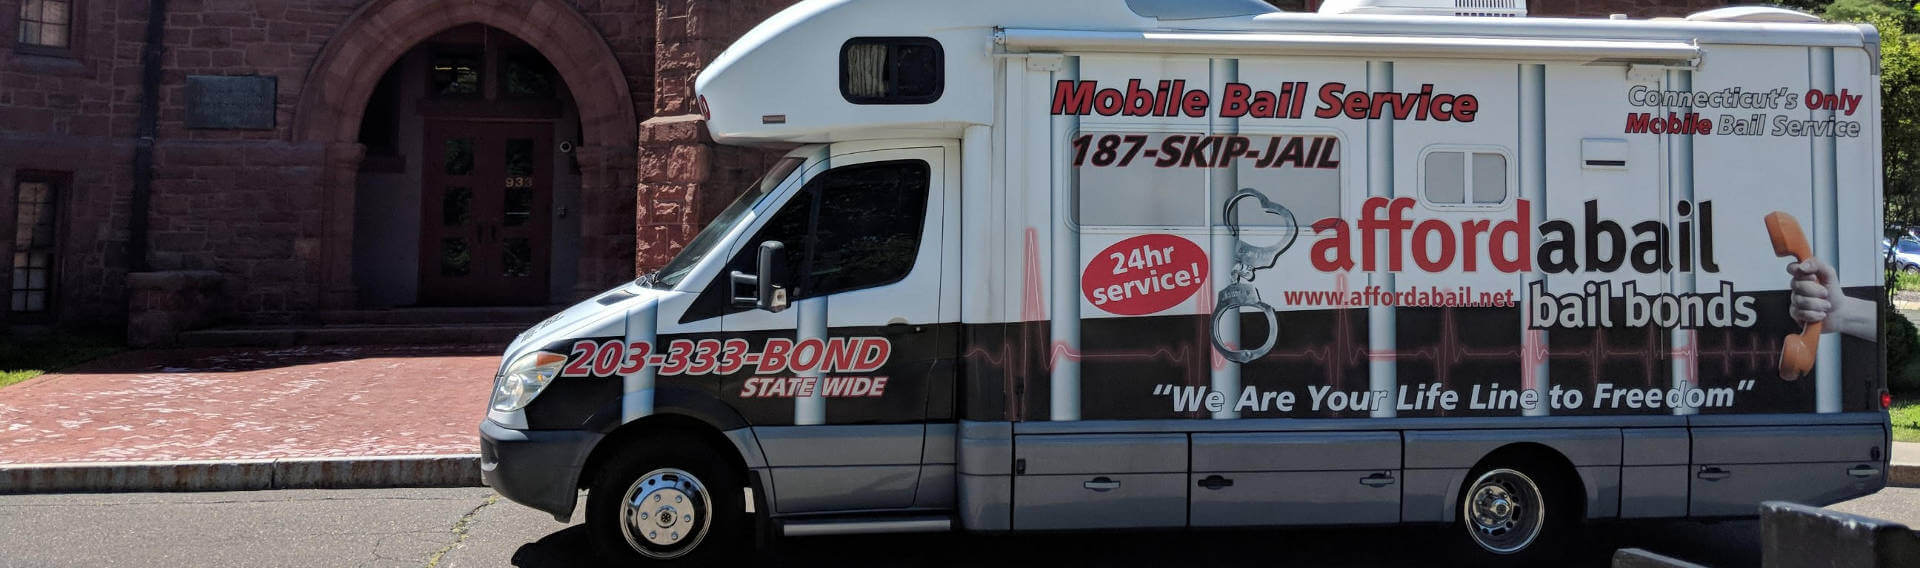 Mobile bail bonds service in Norwalk CT